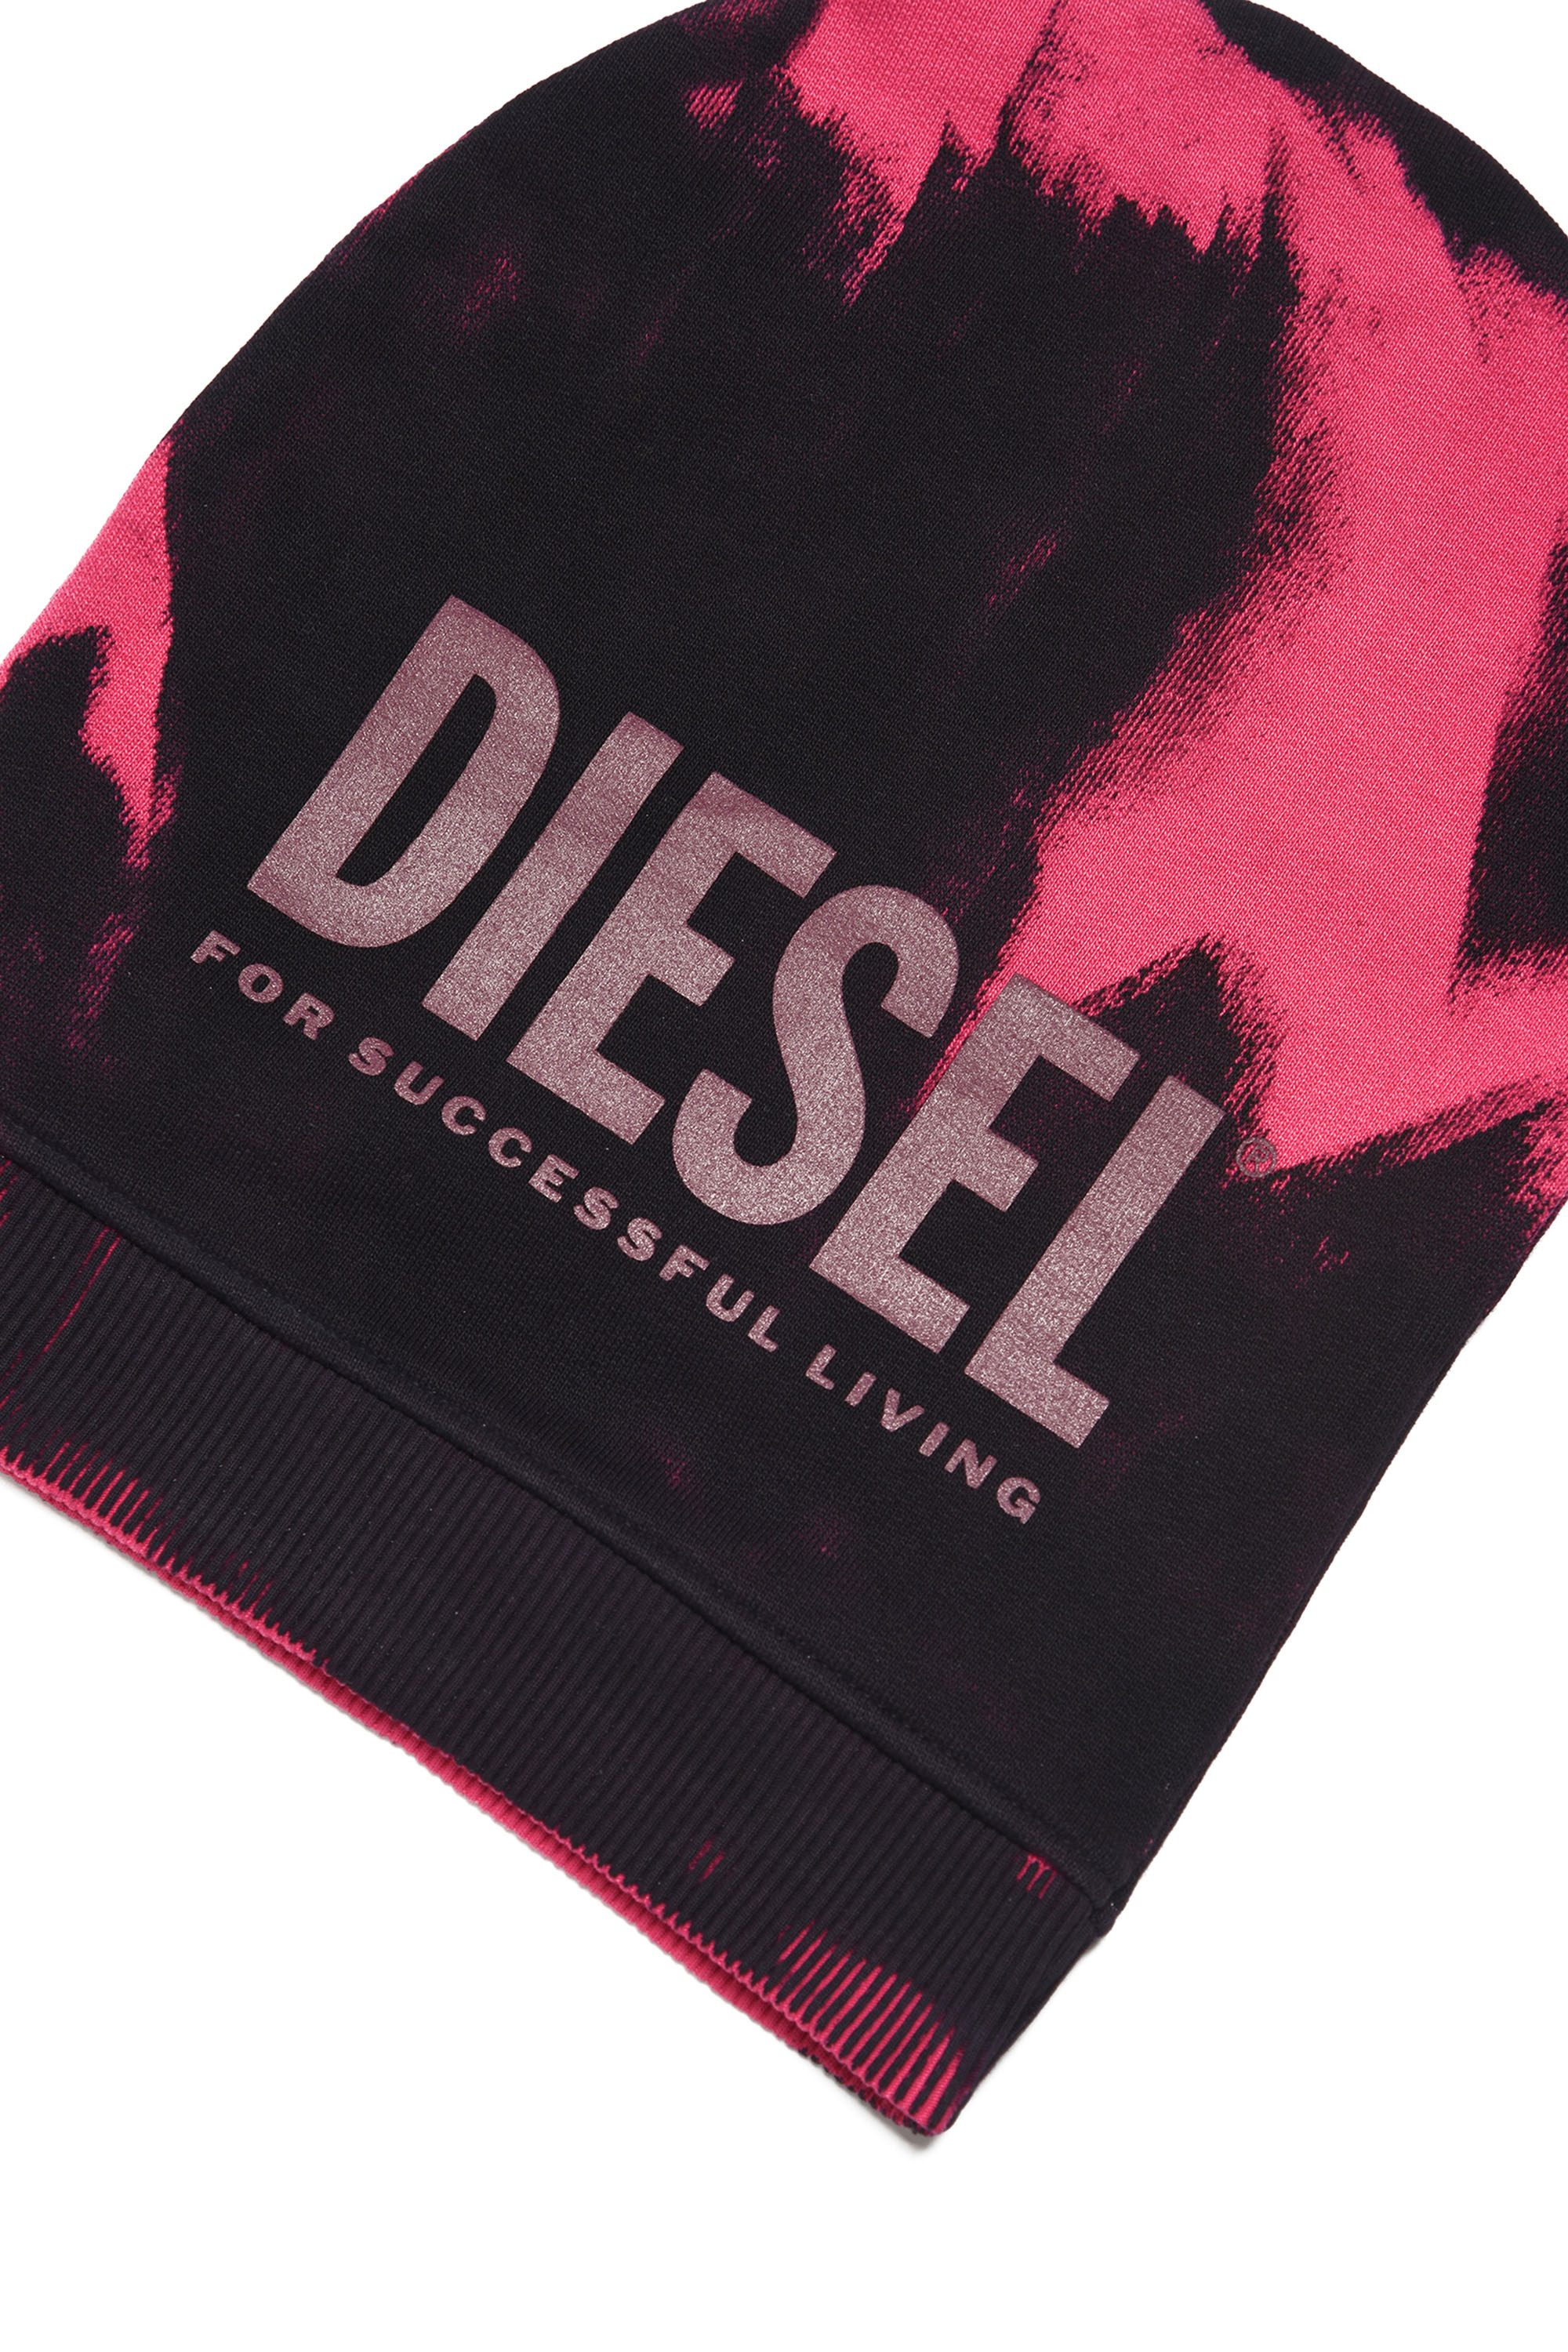 Diesel - FEDYM, Black/Pink - Image 3